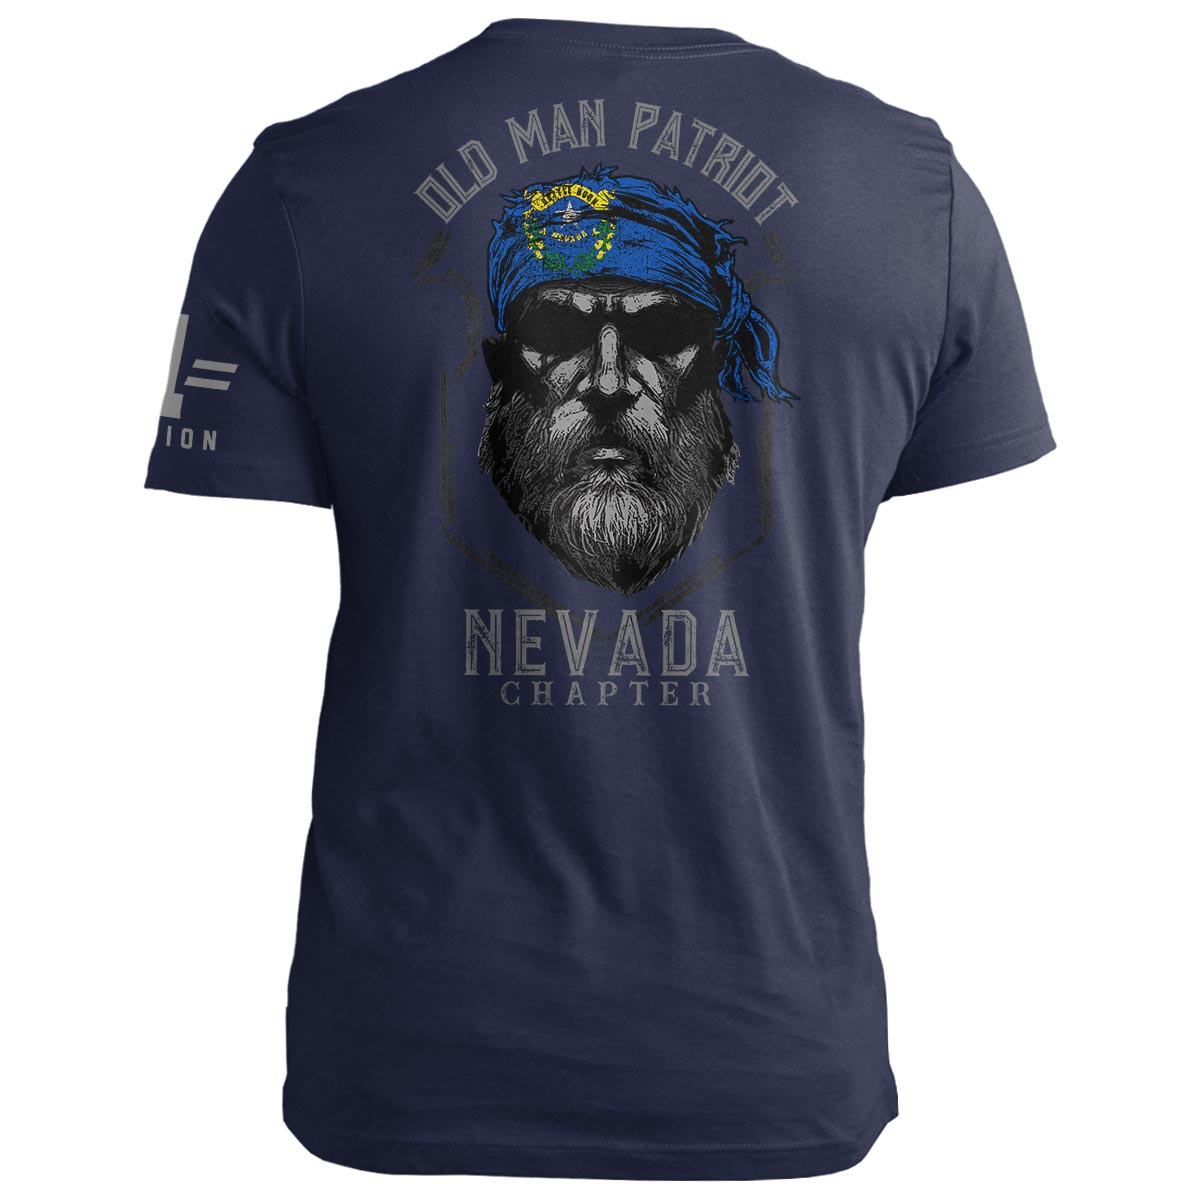 Nevada Old Man Patriot